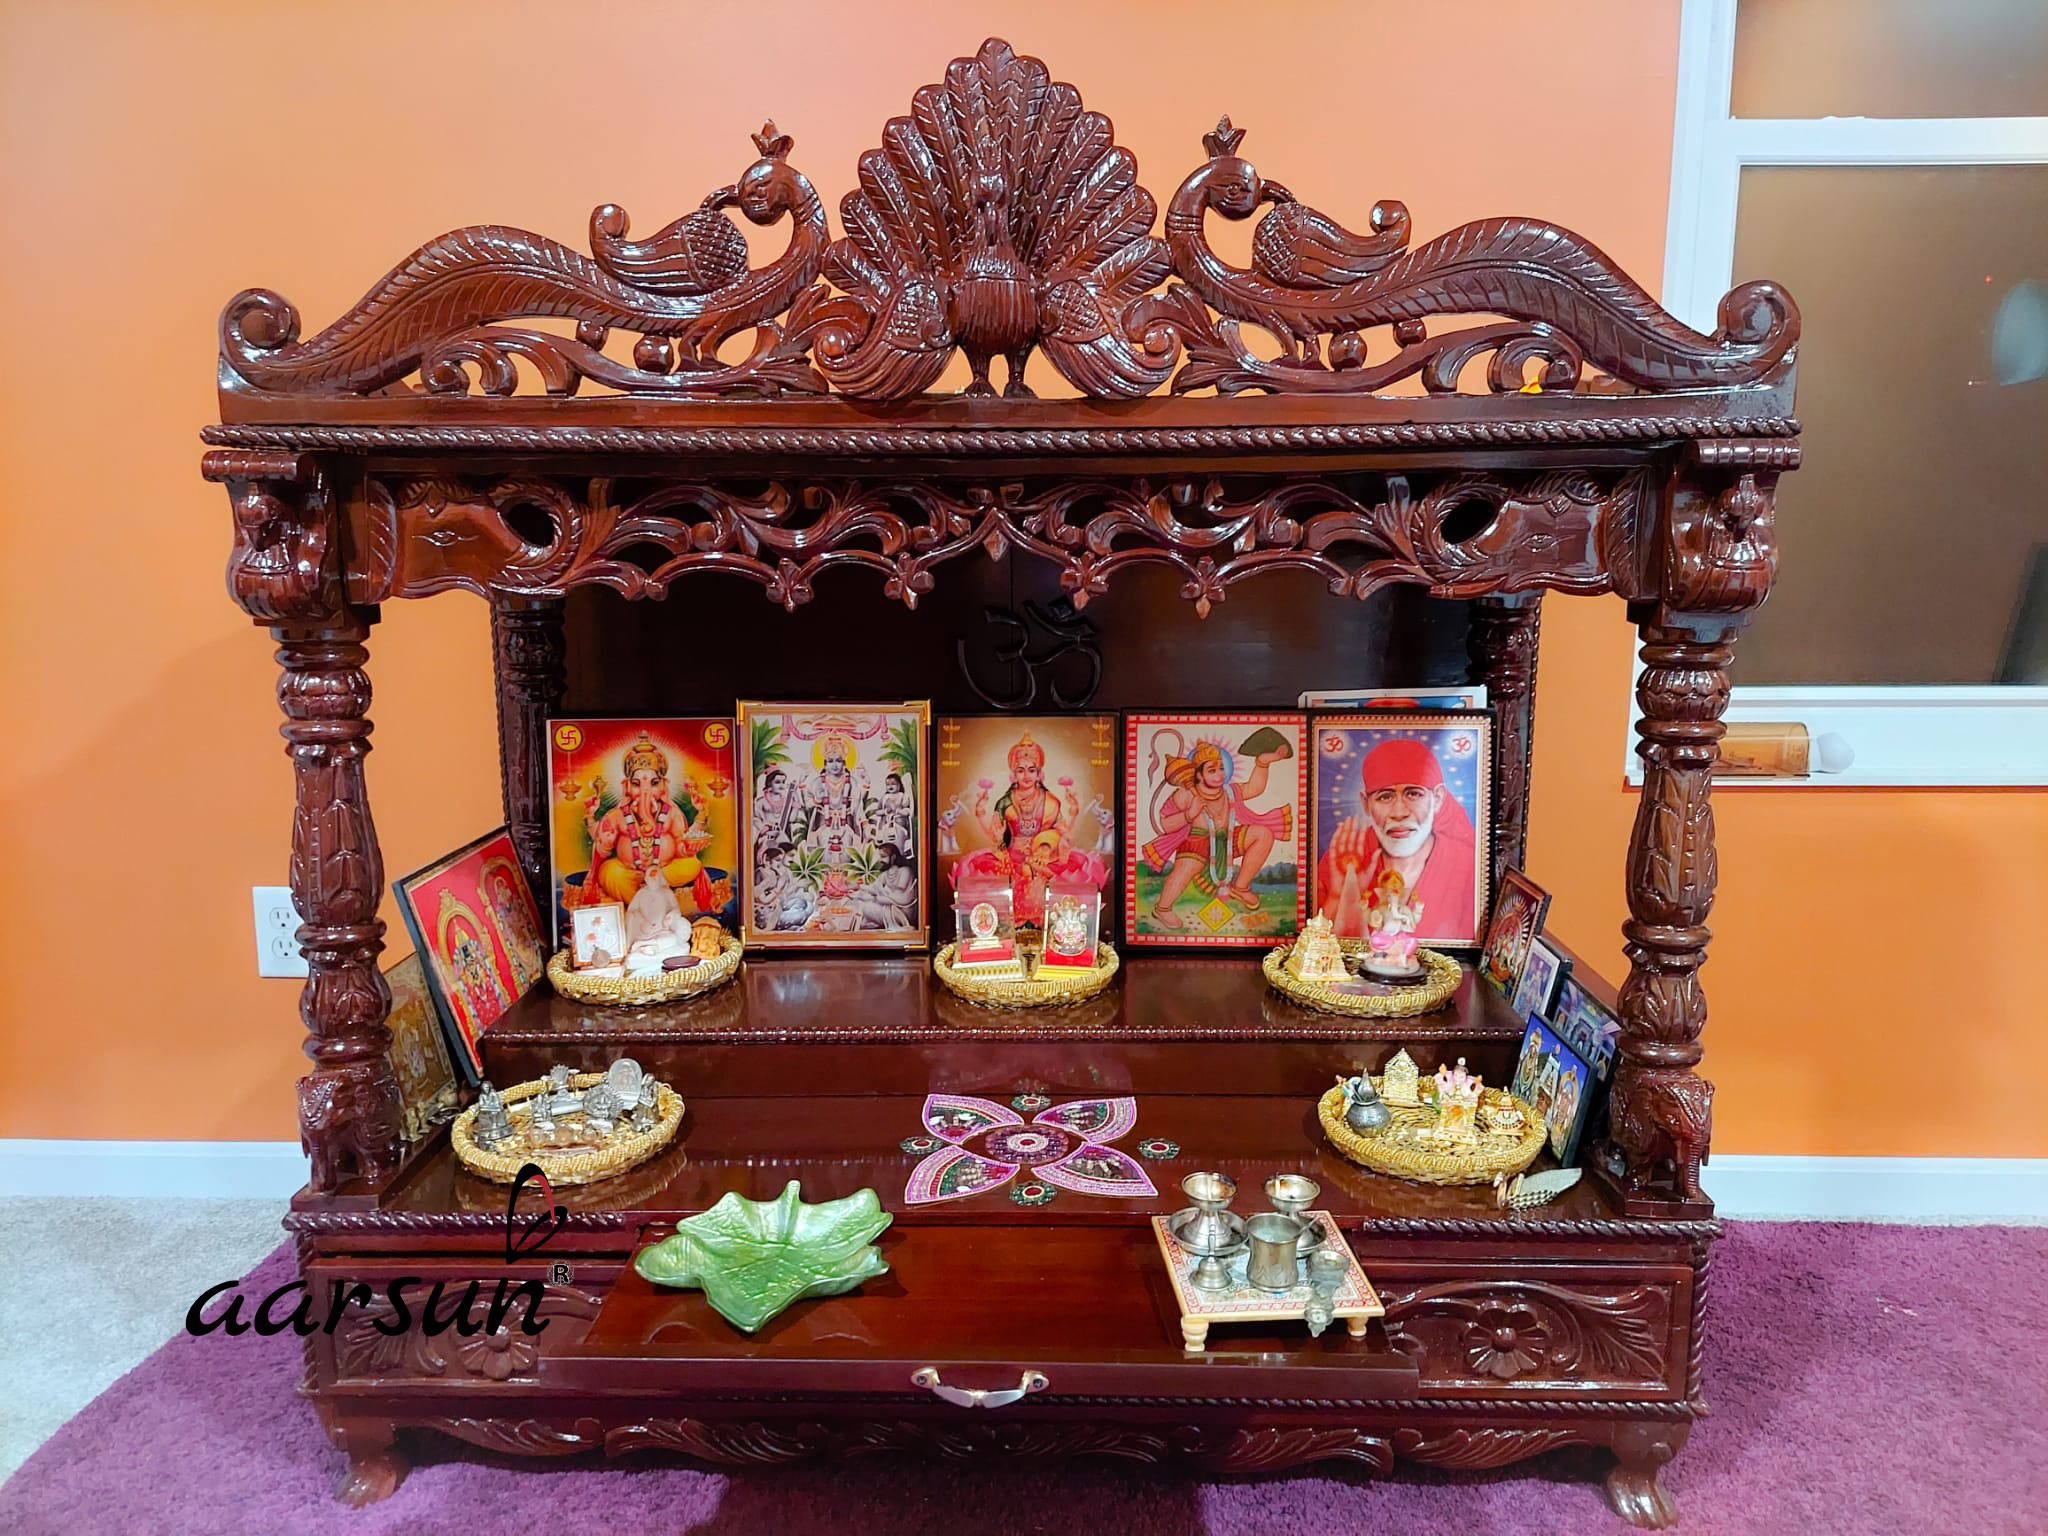 Tavuskuşu Tasarımına Sahip Ahşap Pooja Tapınağı MNDR-0402 için Resim